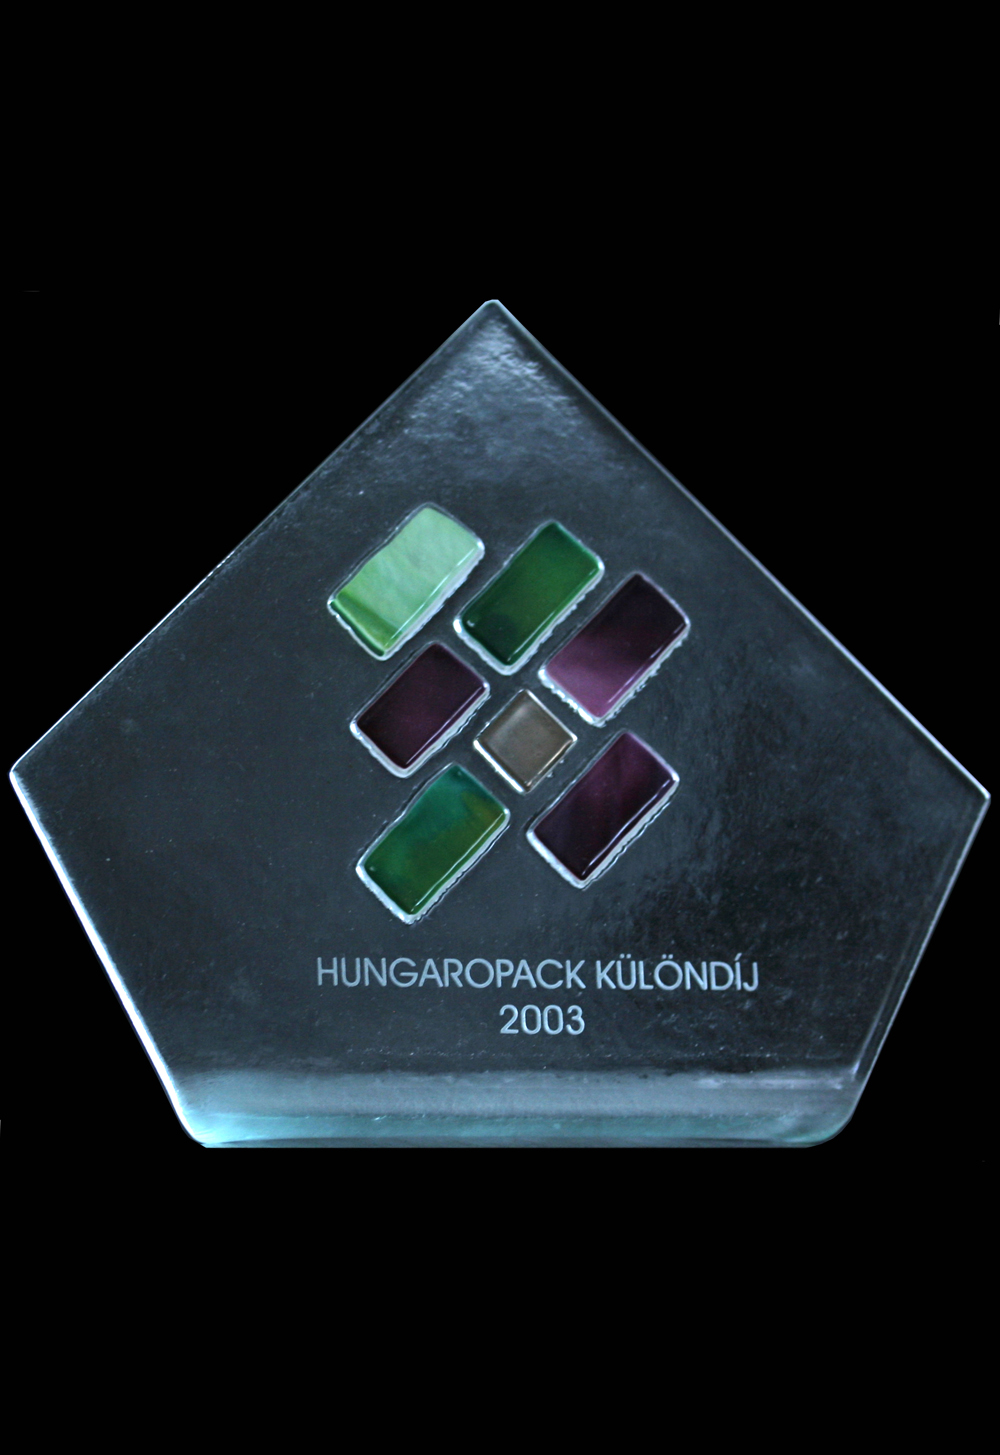 A
                            Chemi-Pack Bt. kapta a Hungaropack 2003
                            killts klndjt